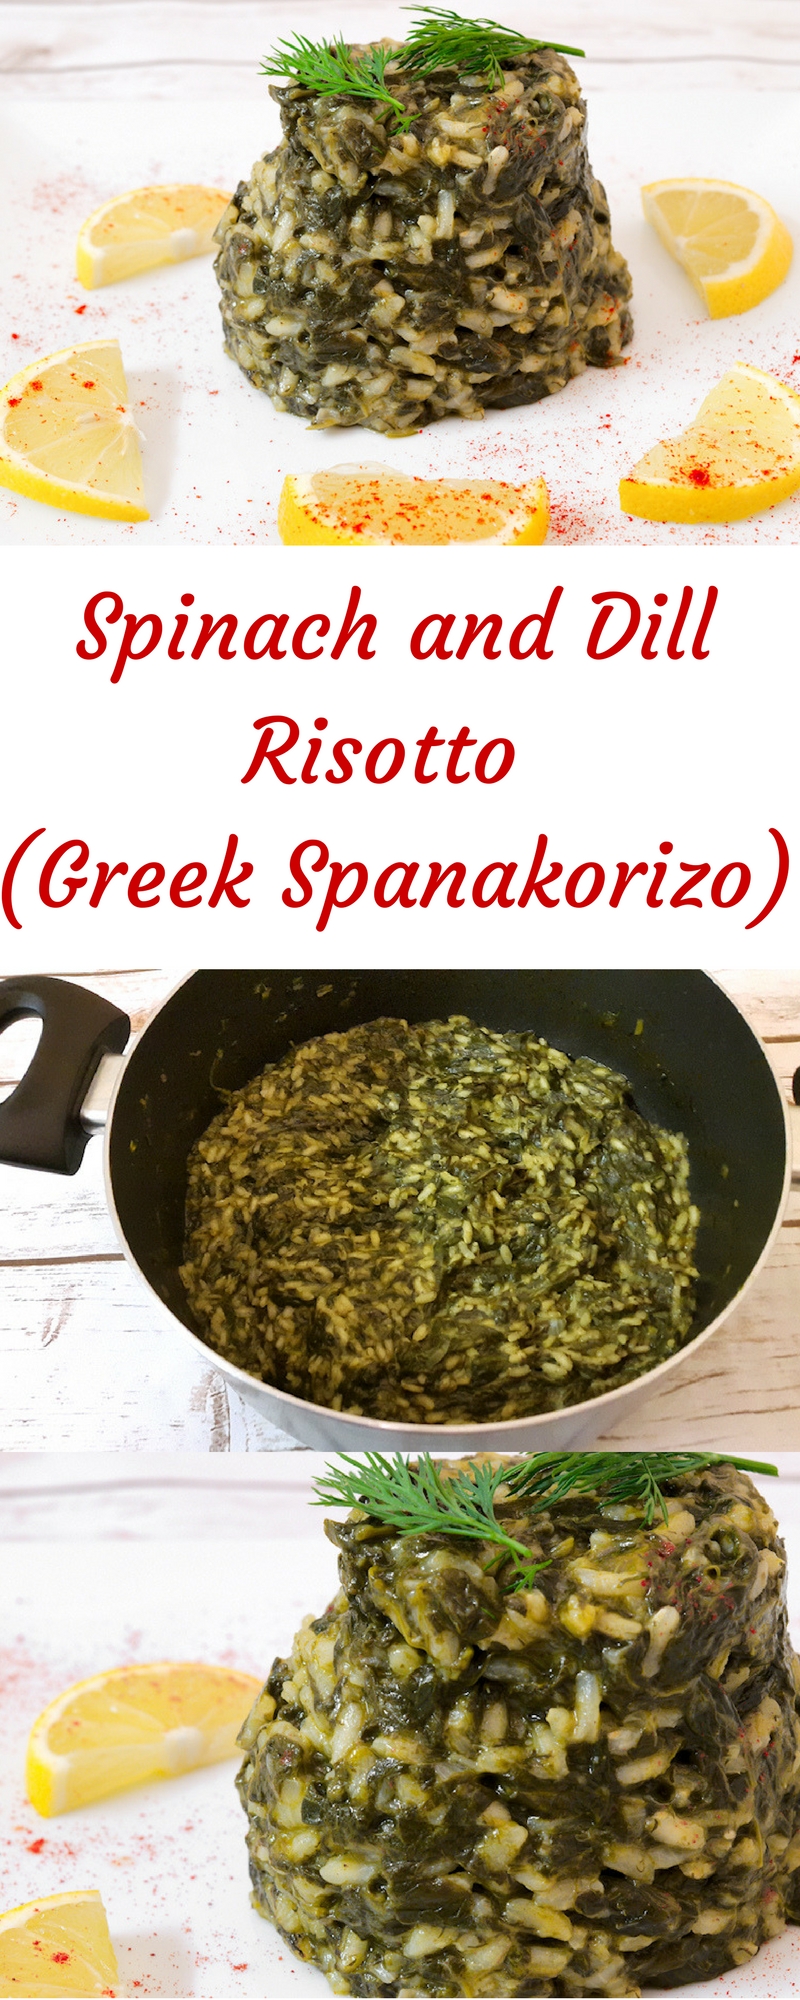 Spinach and Dill Risotto (Greek Spanakorizo)